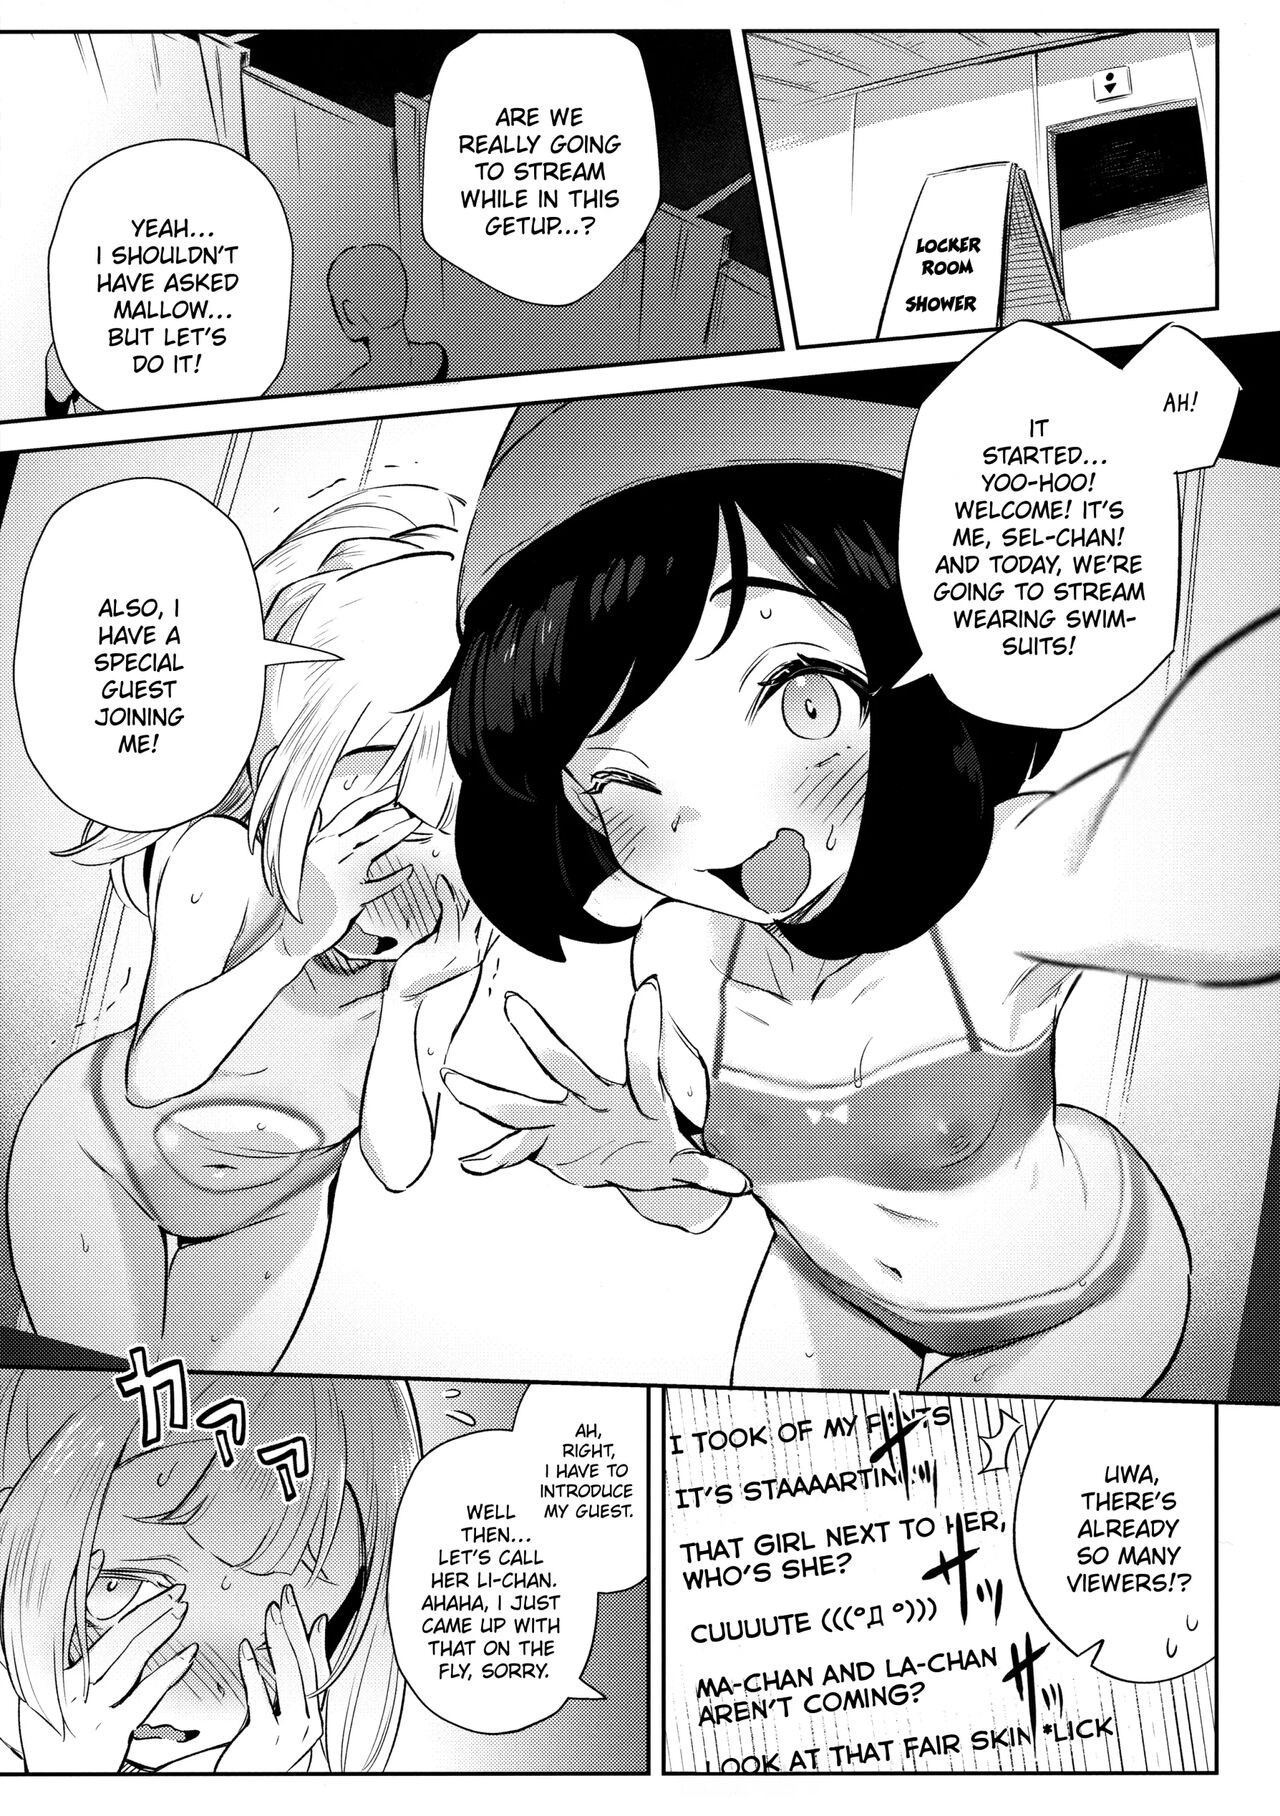 Girl’s Little Secret Adventure Part 2 Porn Comic english 07